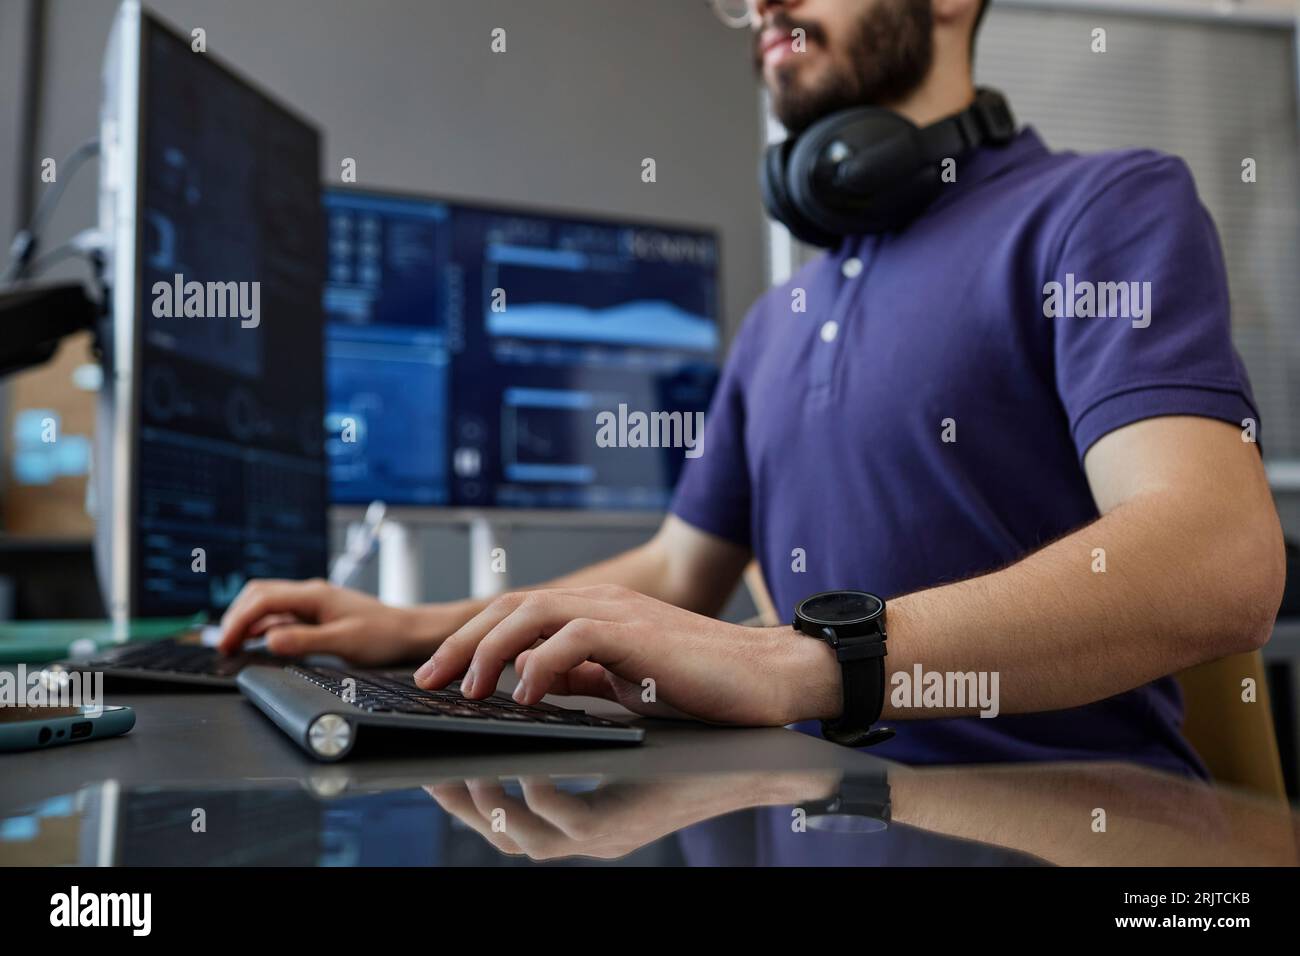 INFORMATIQUE professionnelle tapant sur le clavier d'ordinateur au bureau Banque D'Images